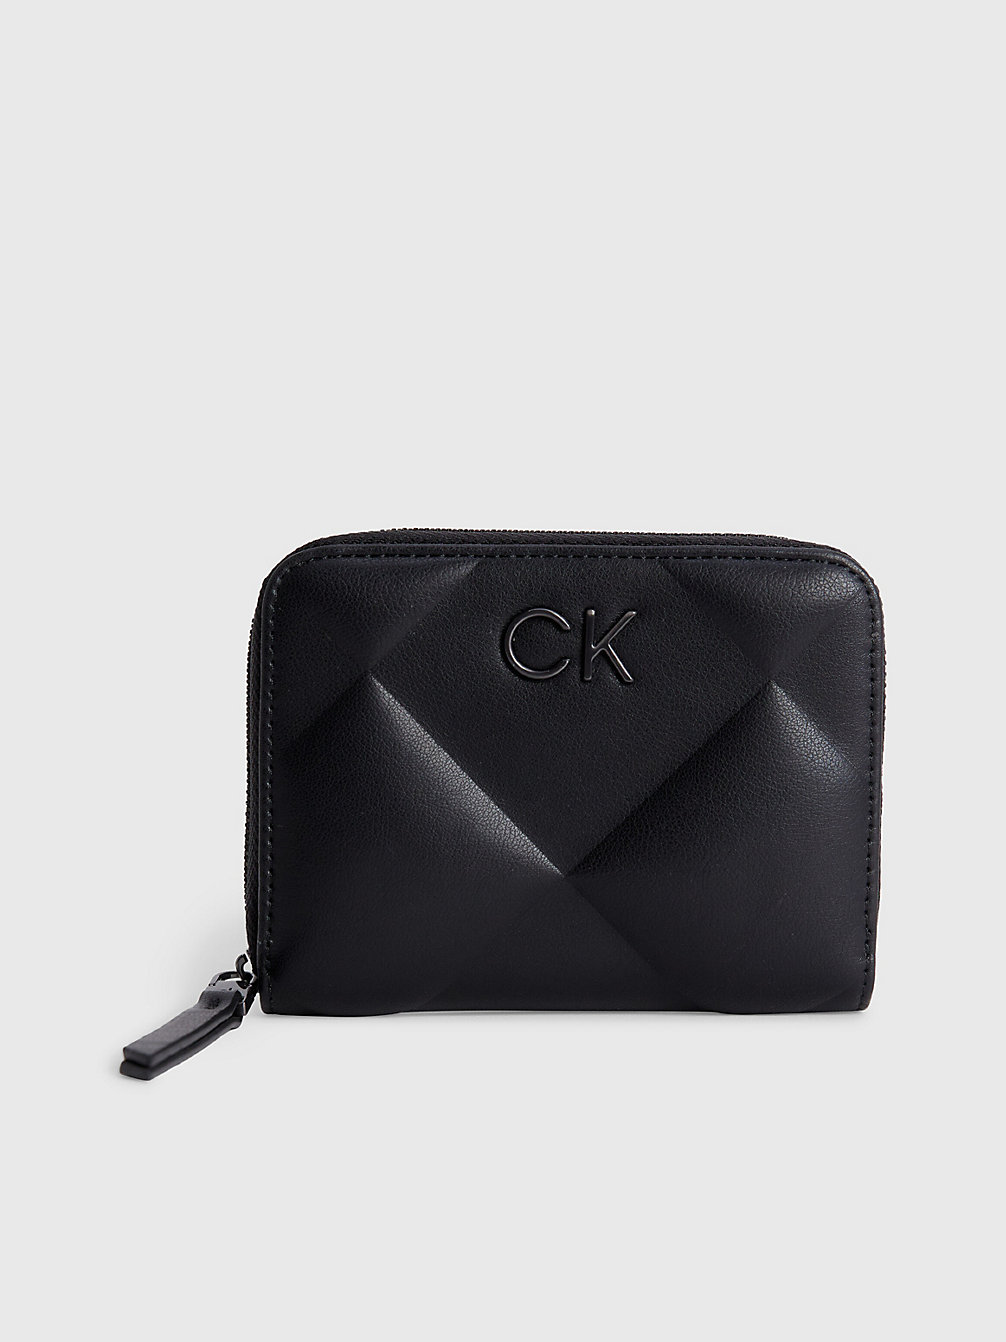 CK BLACK Quilted Rfid Zip Around Wallet undefined women Calvin Klein